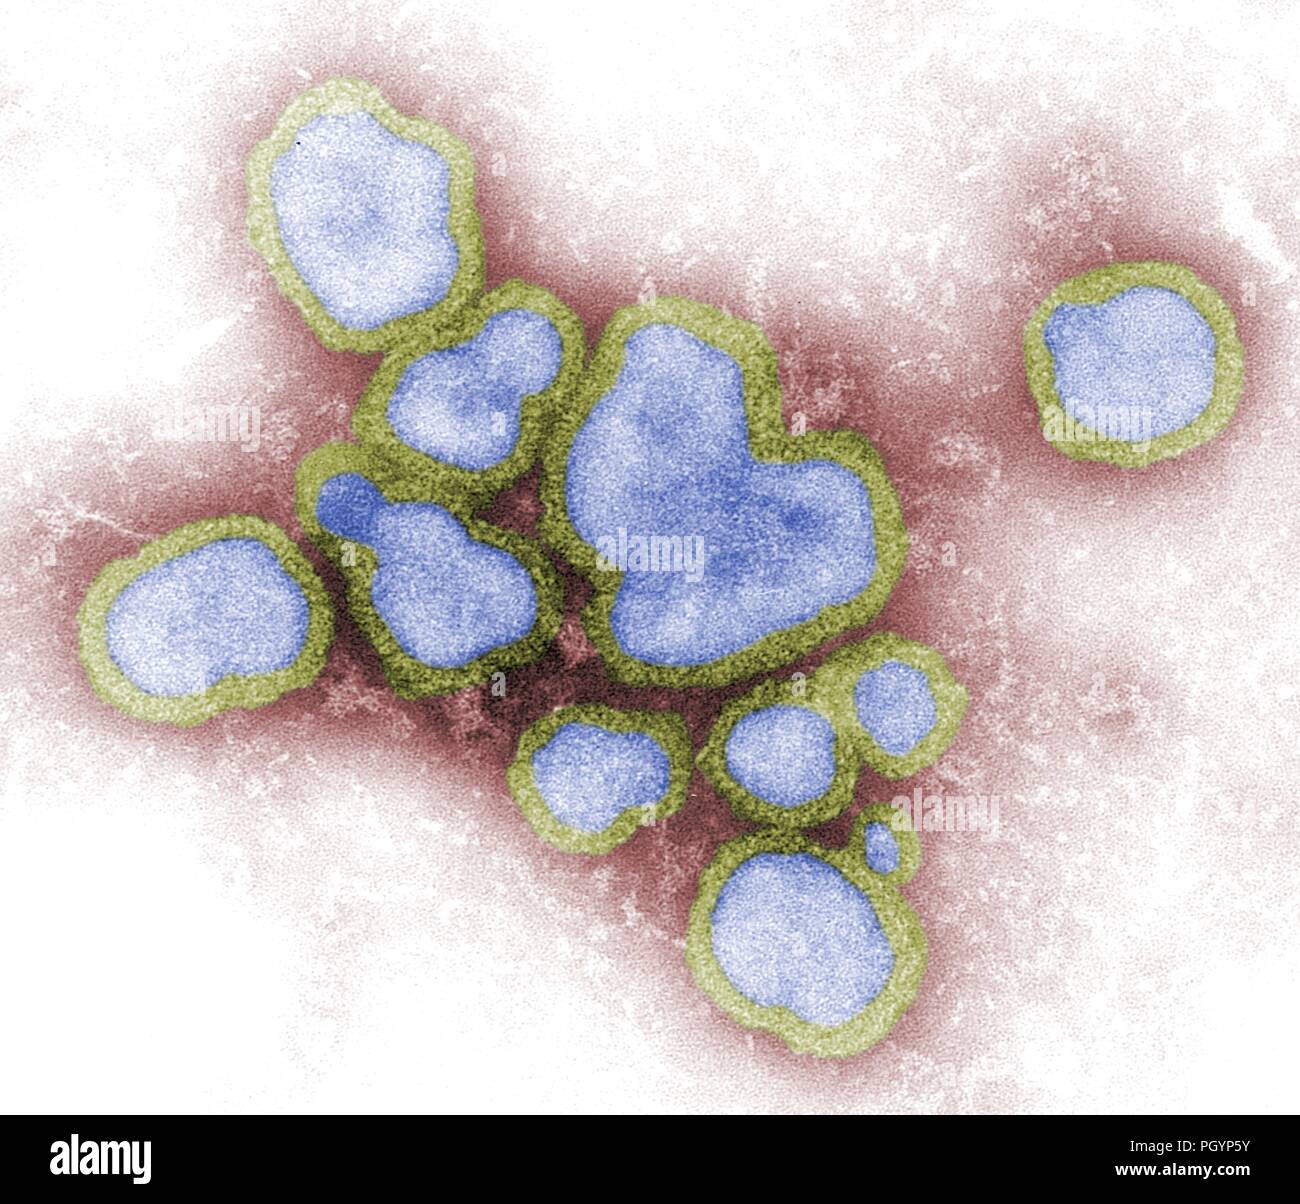 Fotografia di close-up di un verde giada e tinta blu campione di virus A di influenza (Famiglia Orthomyxovirus) su una terra rossa, Immagine cortesia CDC/FA Murphy, 1976. () Foto Stock